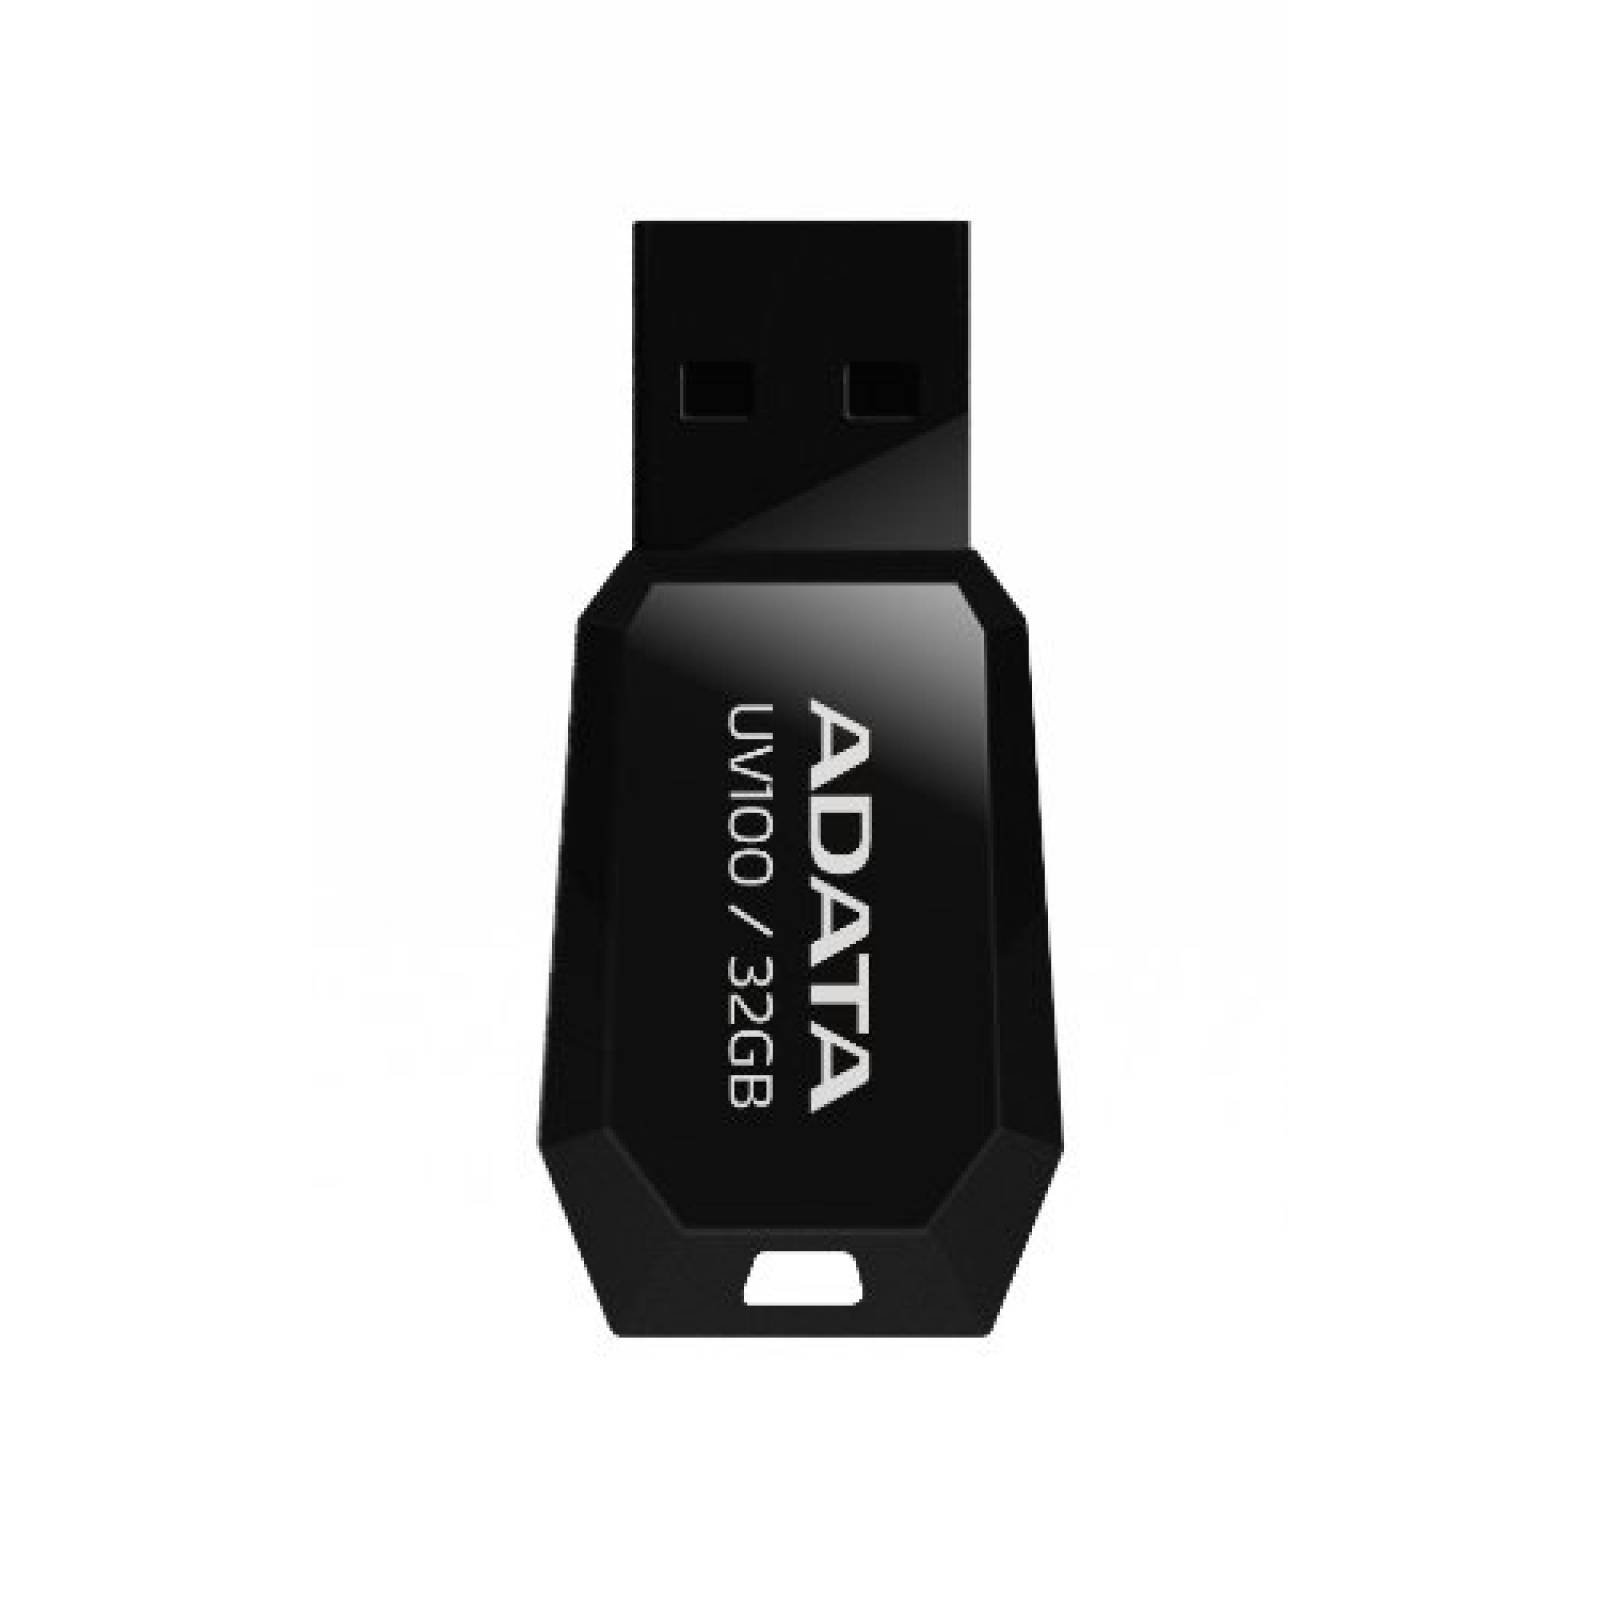 Memoria USB 2.0 Adata UV100 32GB Color Negro